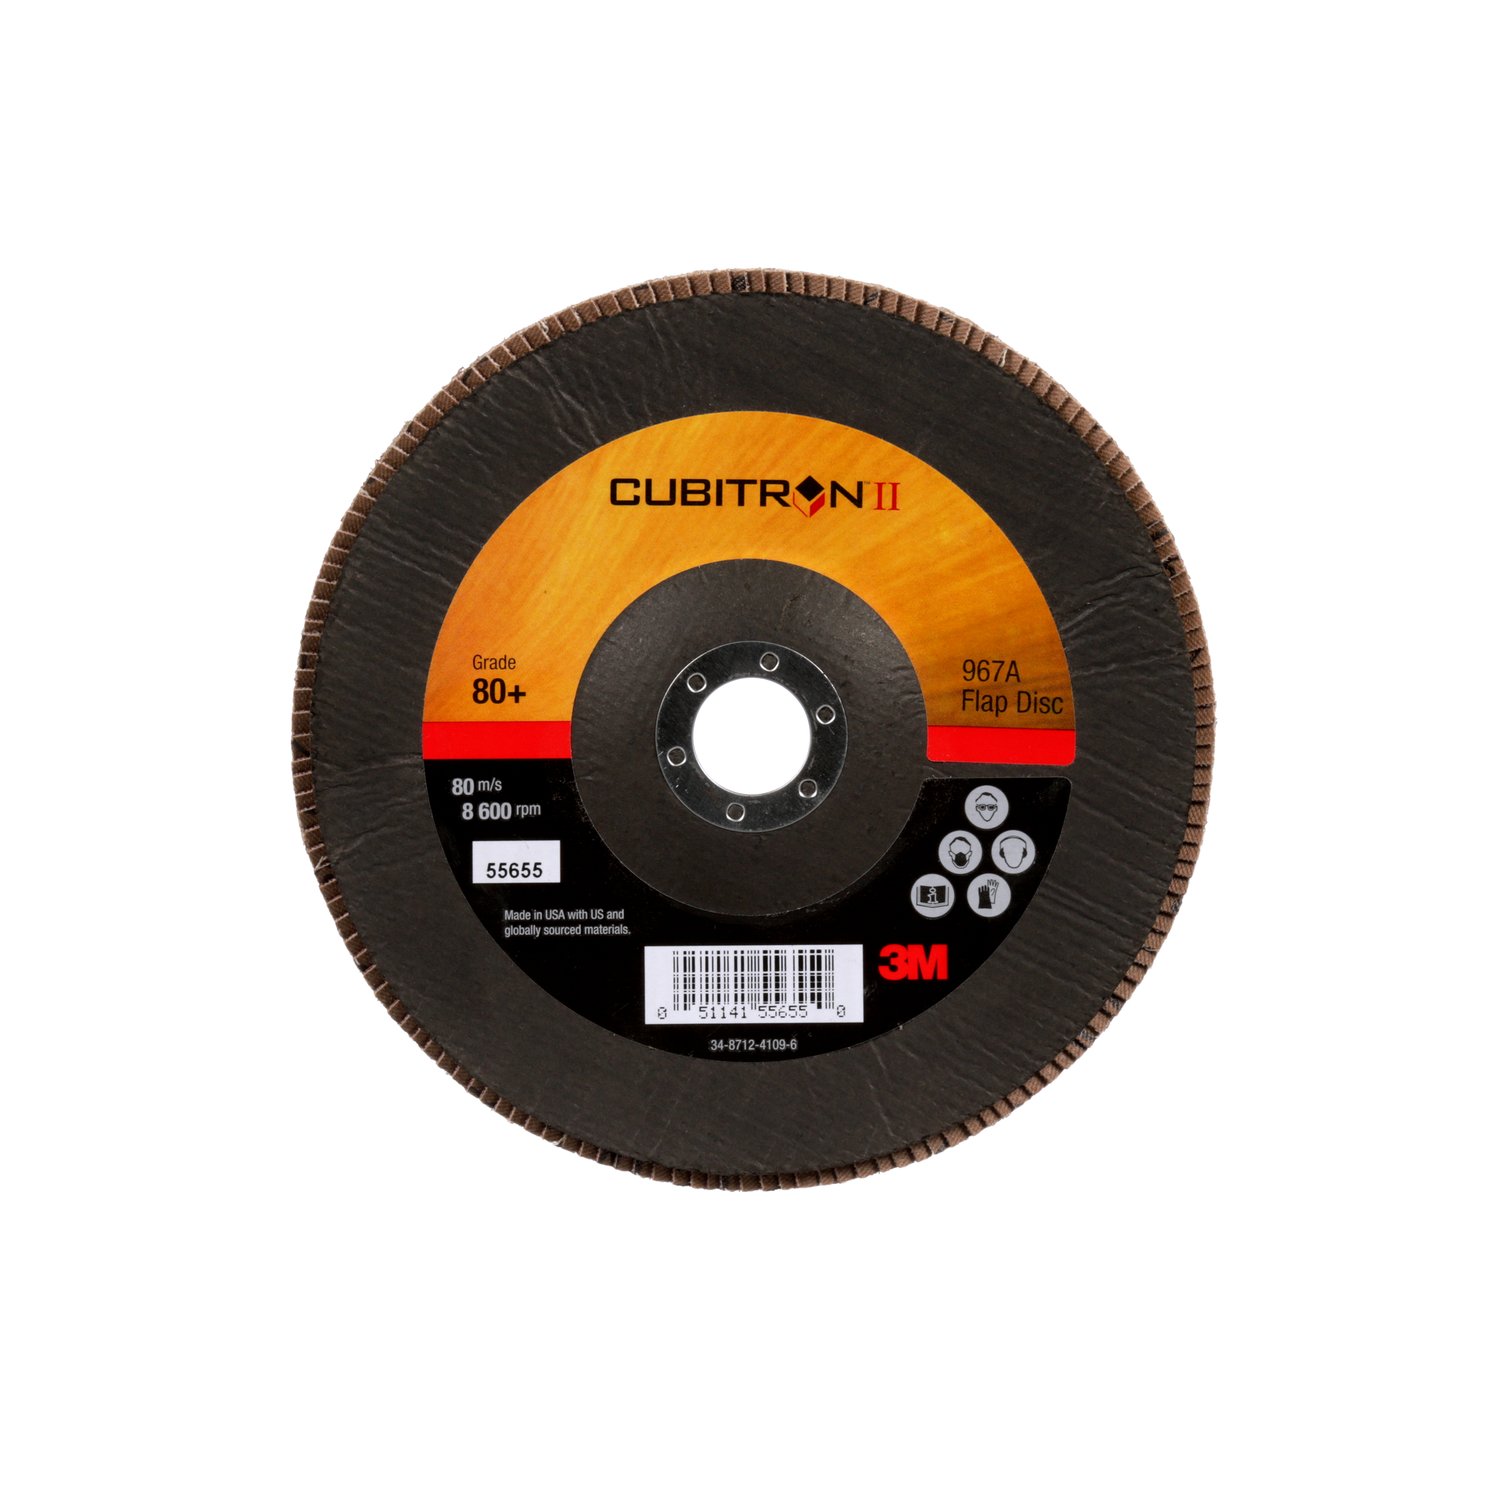 7010300291 - 3M Cubitron II Flap Disc 967A, 80+, T29, 7 in x 7/8 in, Giant, 5
ea/Case